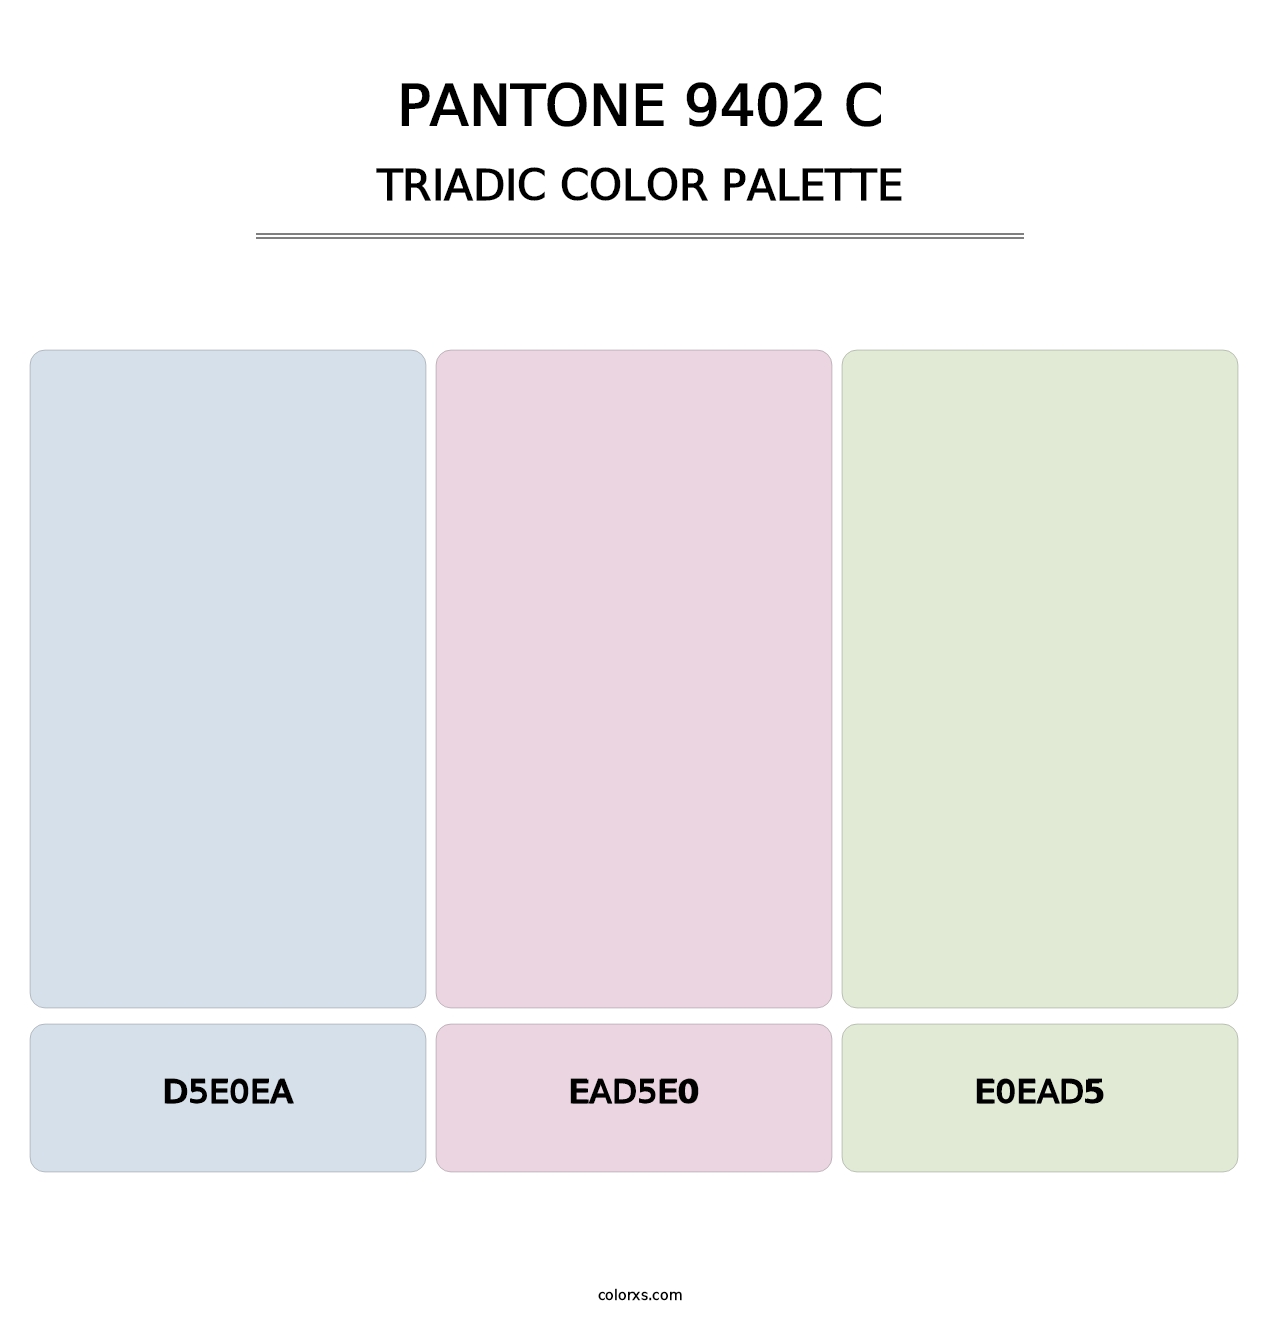 PANTONE 9402 C - Triadic Color Palette